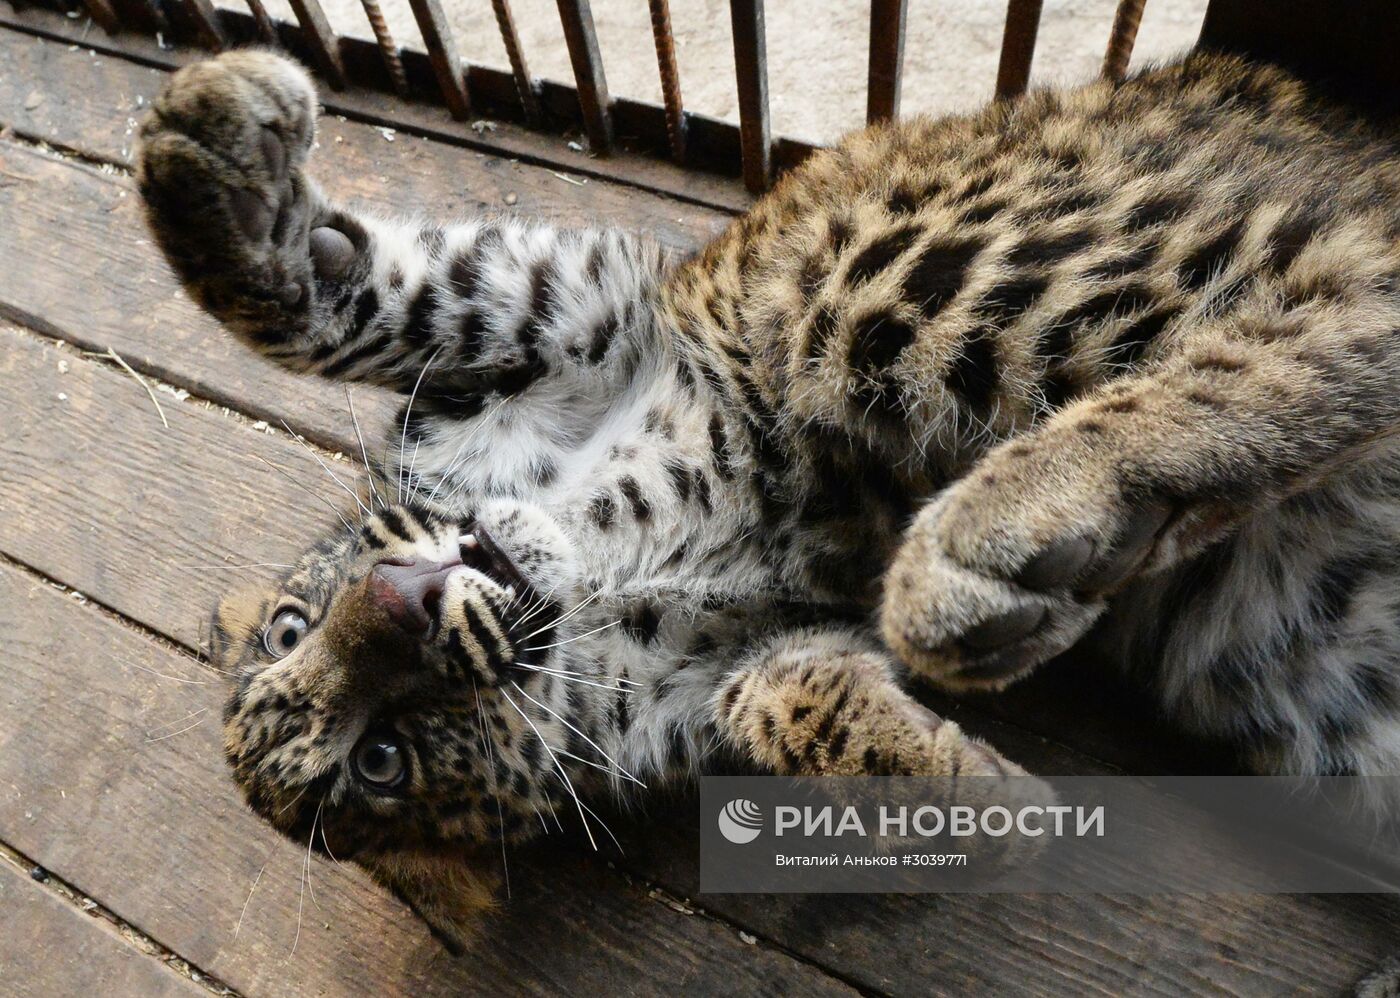 Пополнение в зоопарке "Чудесный" в Приморском крае